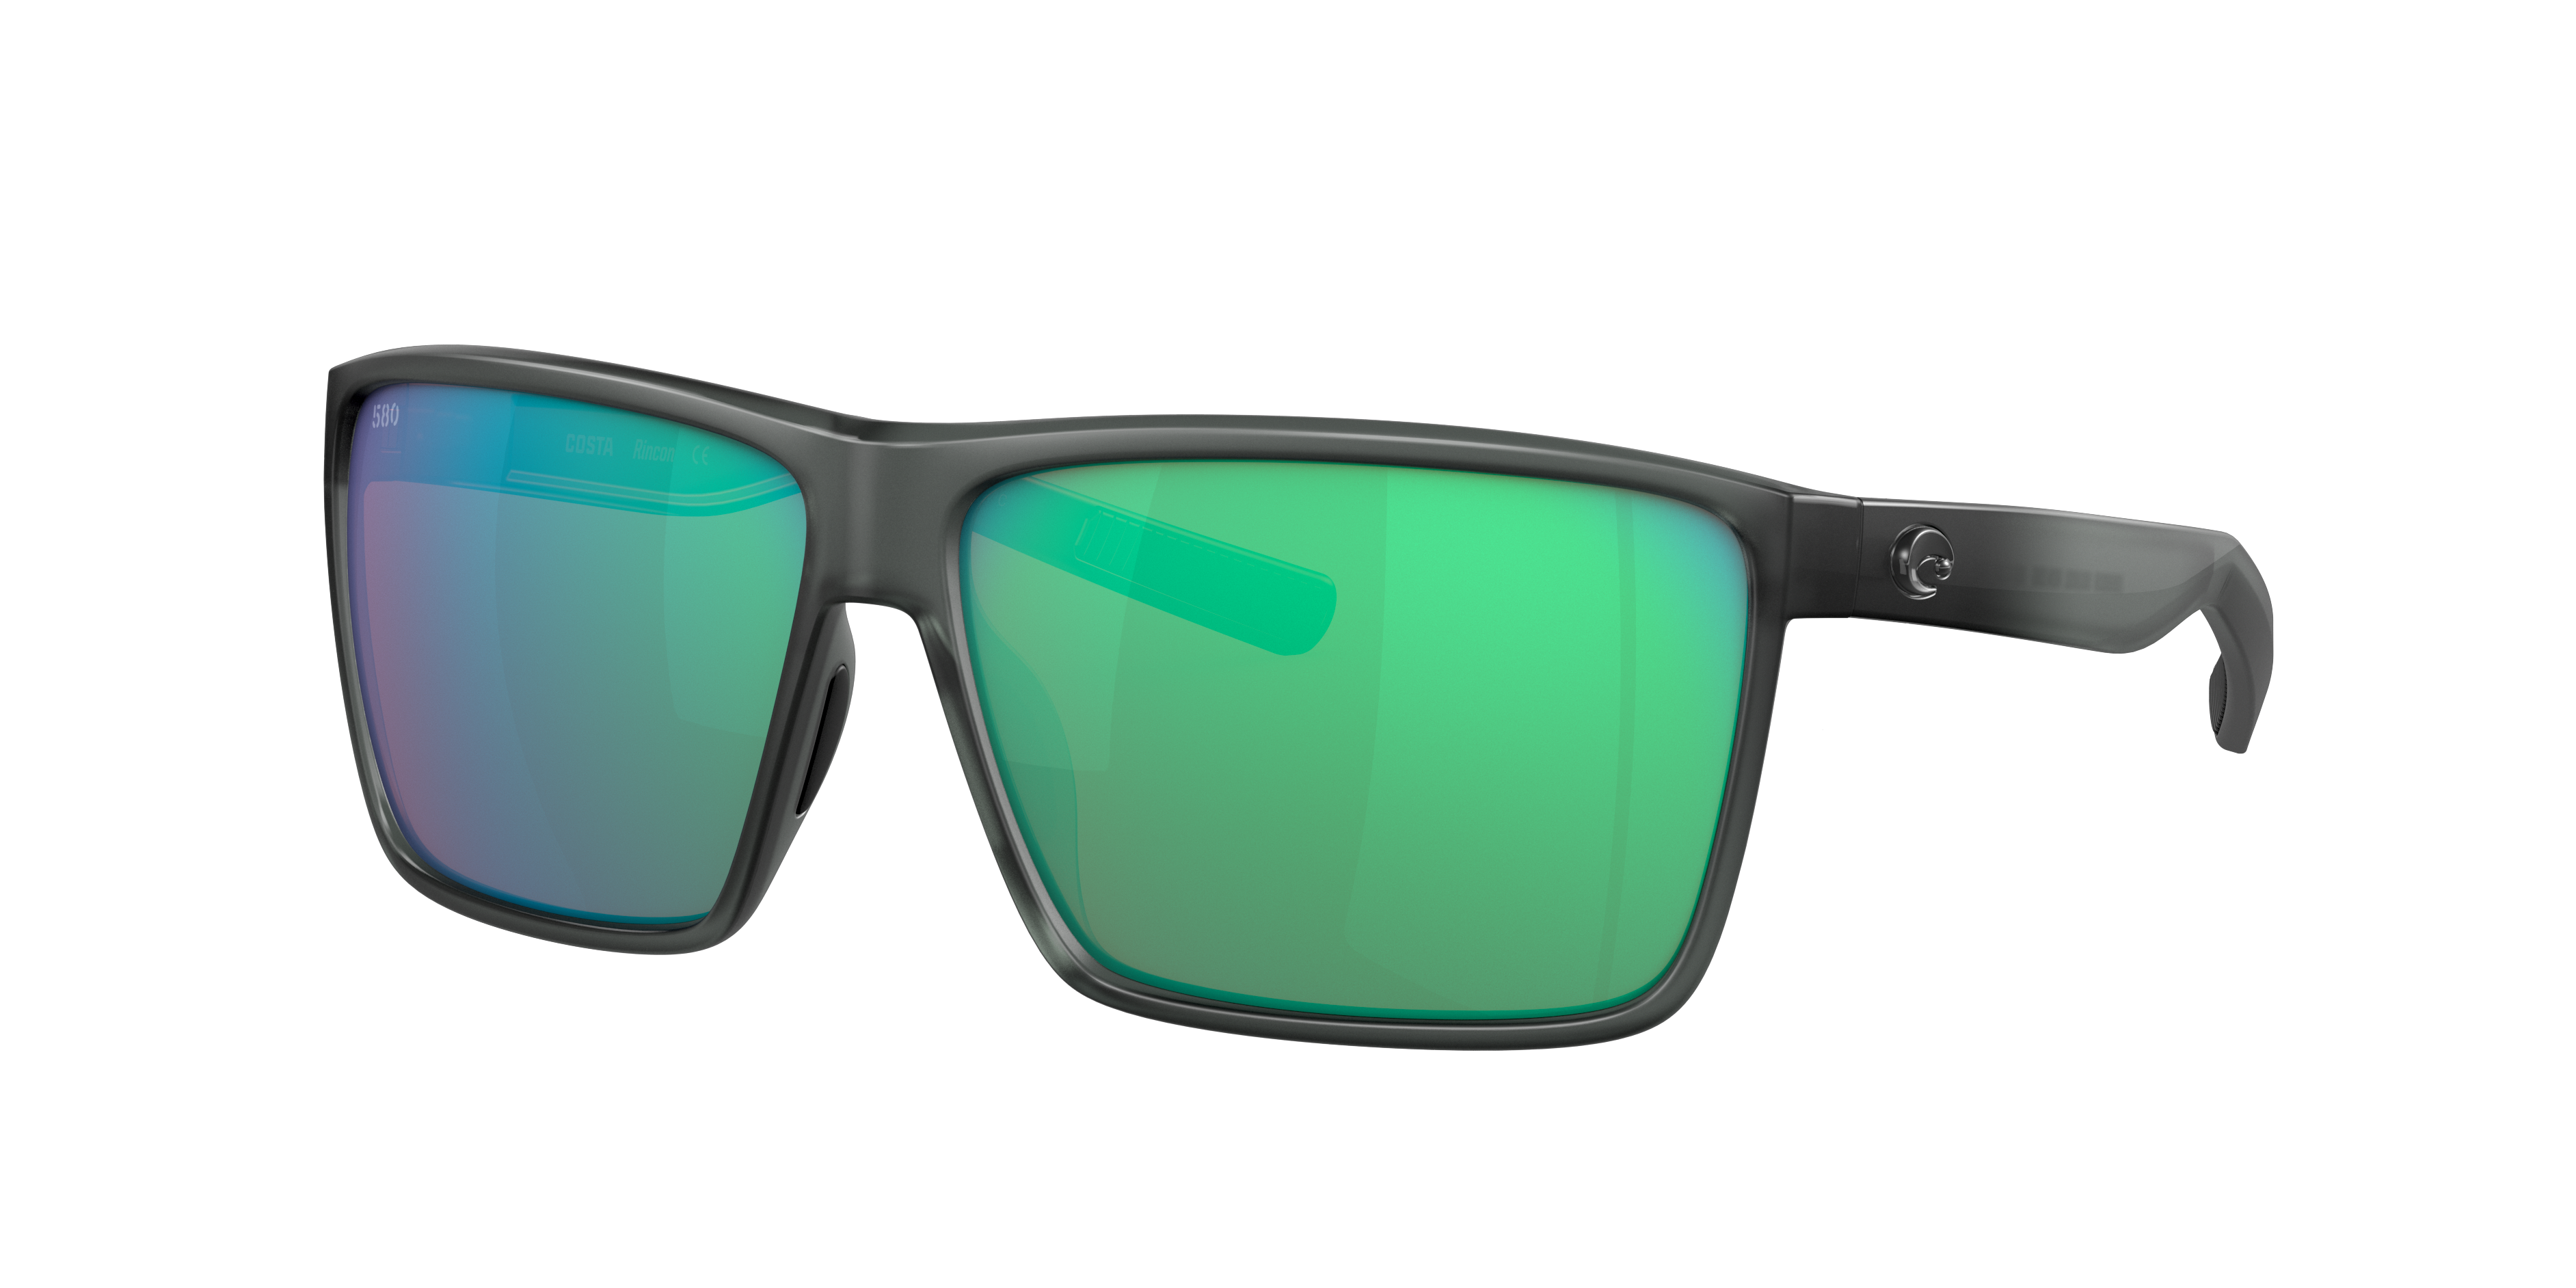 costa rincon polarized sunglasses